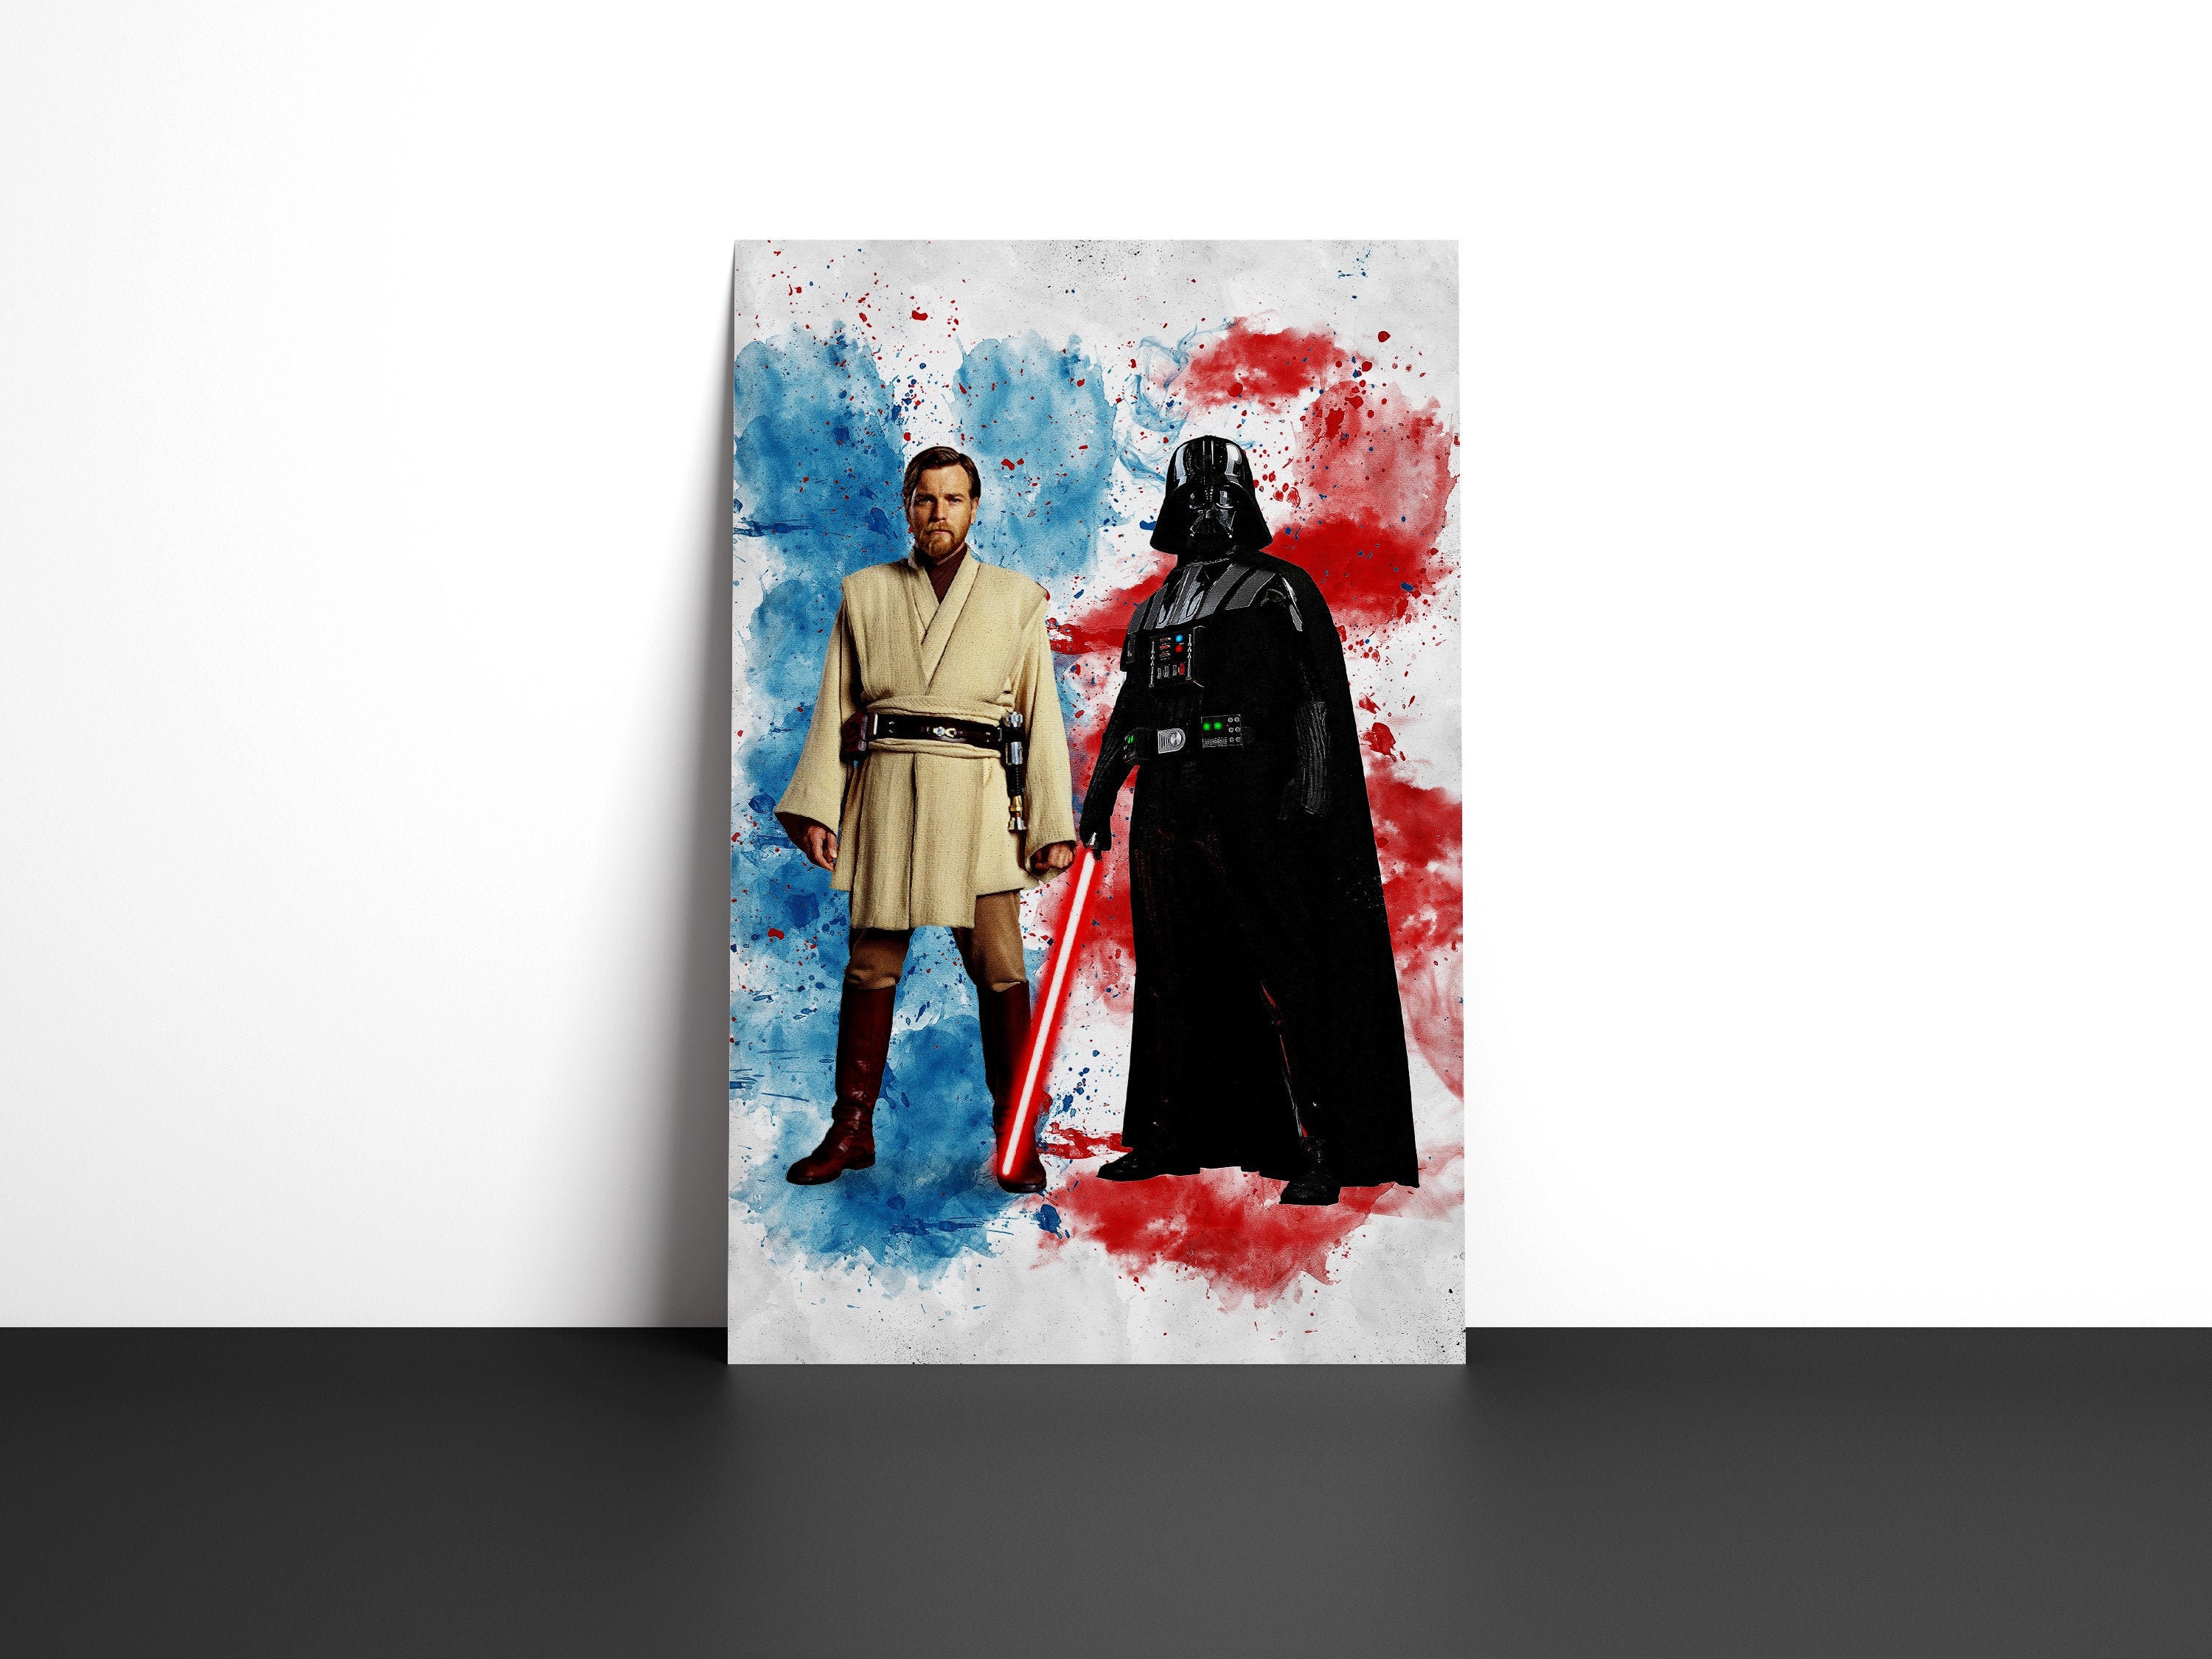 Obi-Wan Kenobi & Darth Vader Poster - Star Wars Poster - Obiwan Kenobi, Darth Vader Print - Watercolor Art - Printable Art - Digital Art